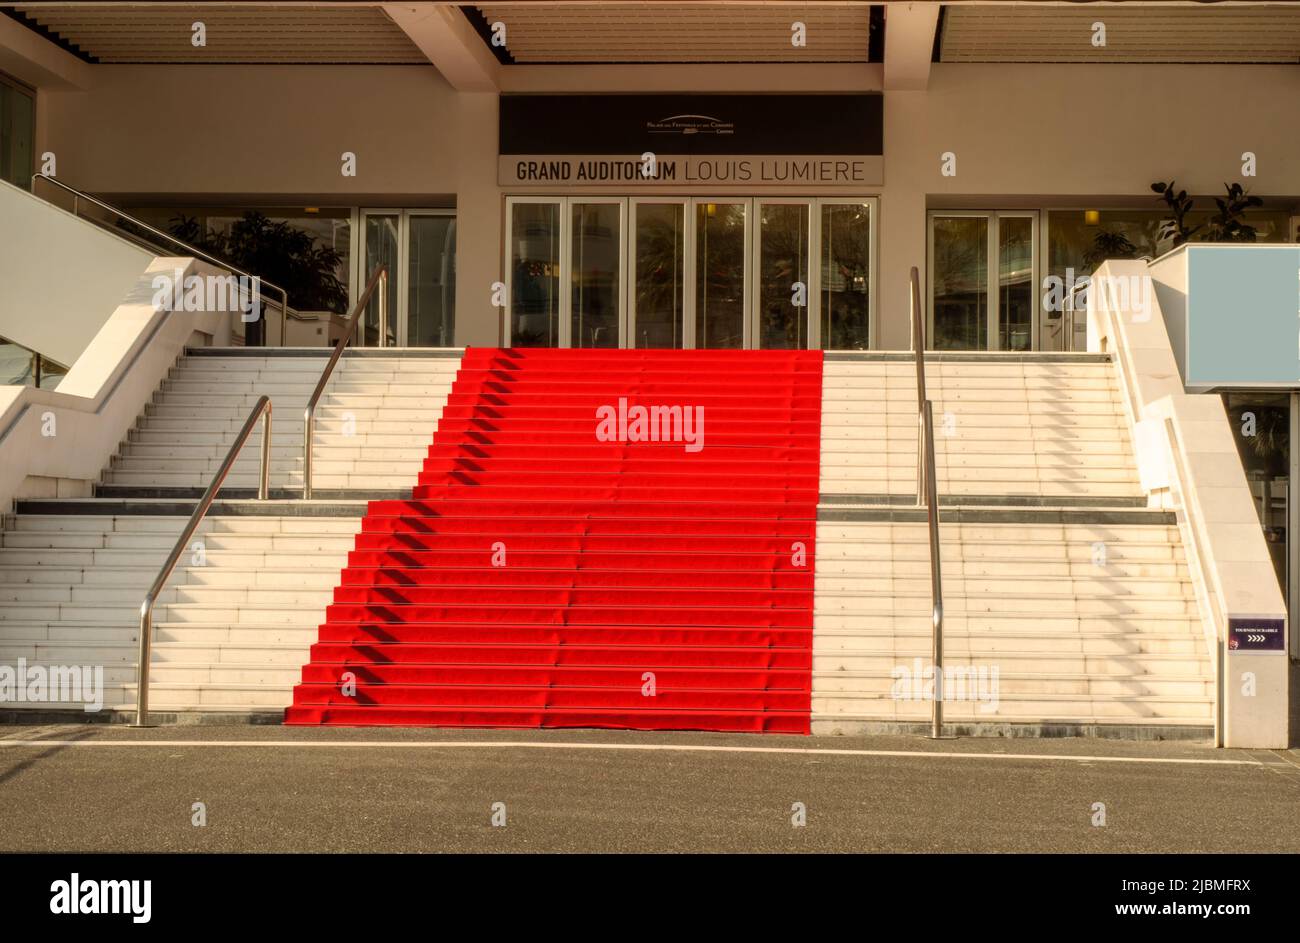 Cannes, Francia 02-23-2020 famoso tappeto rosso del palais des festival et des congres de Cannes, Grand Auditorium Louis Lumiere Foto Stock